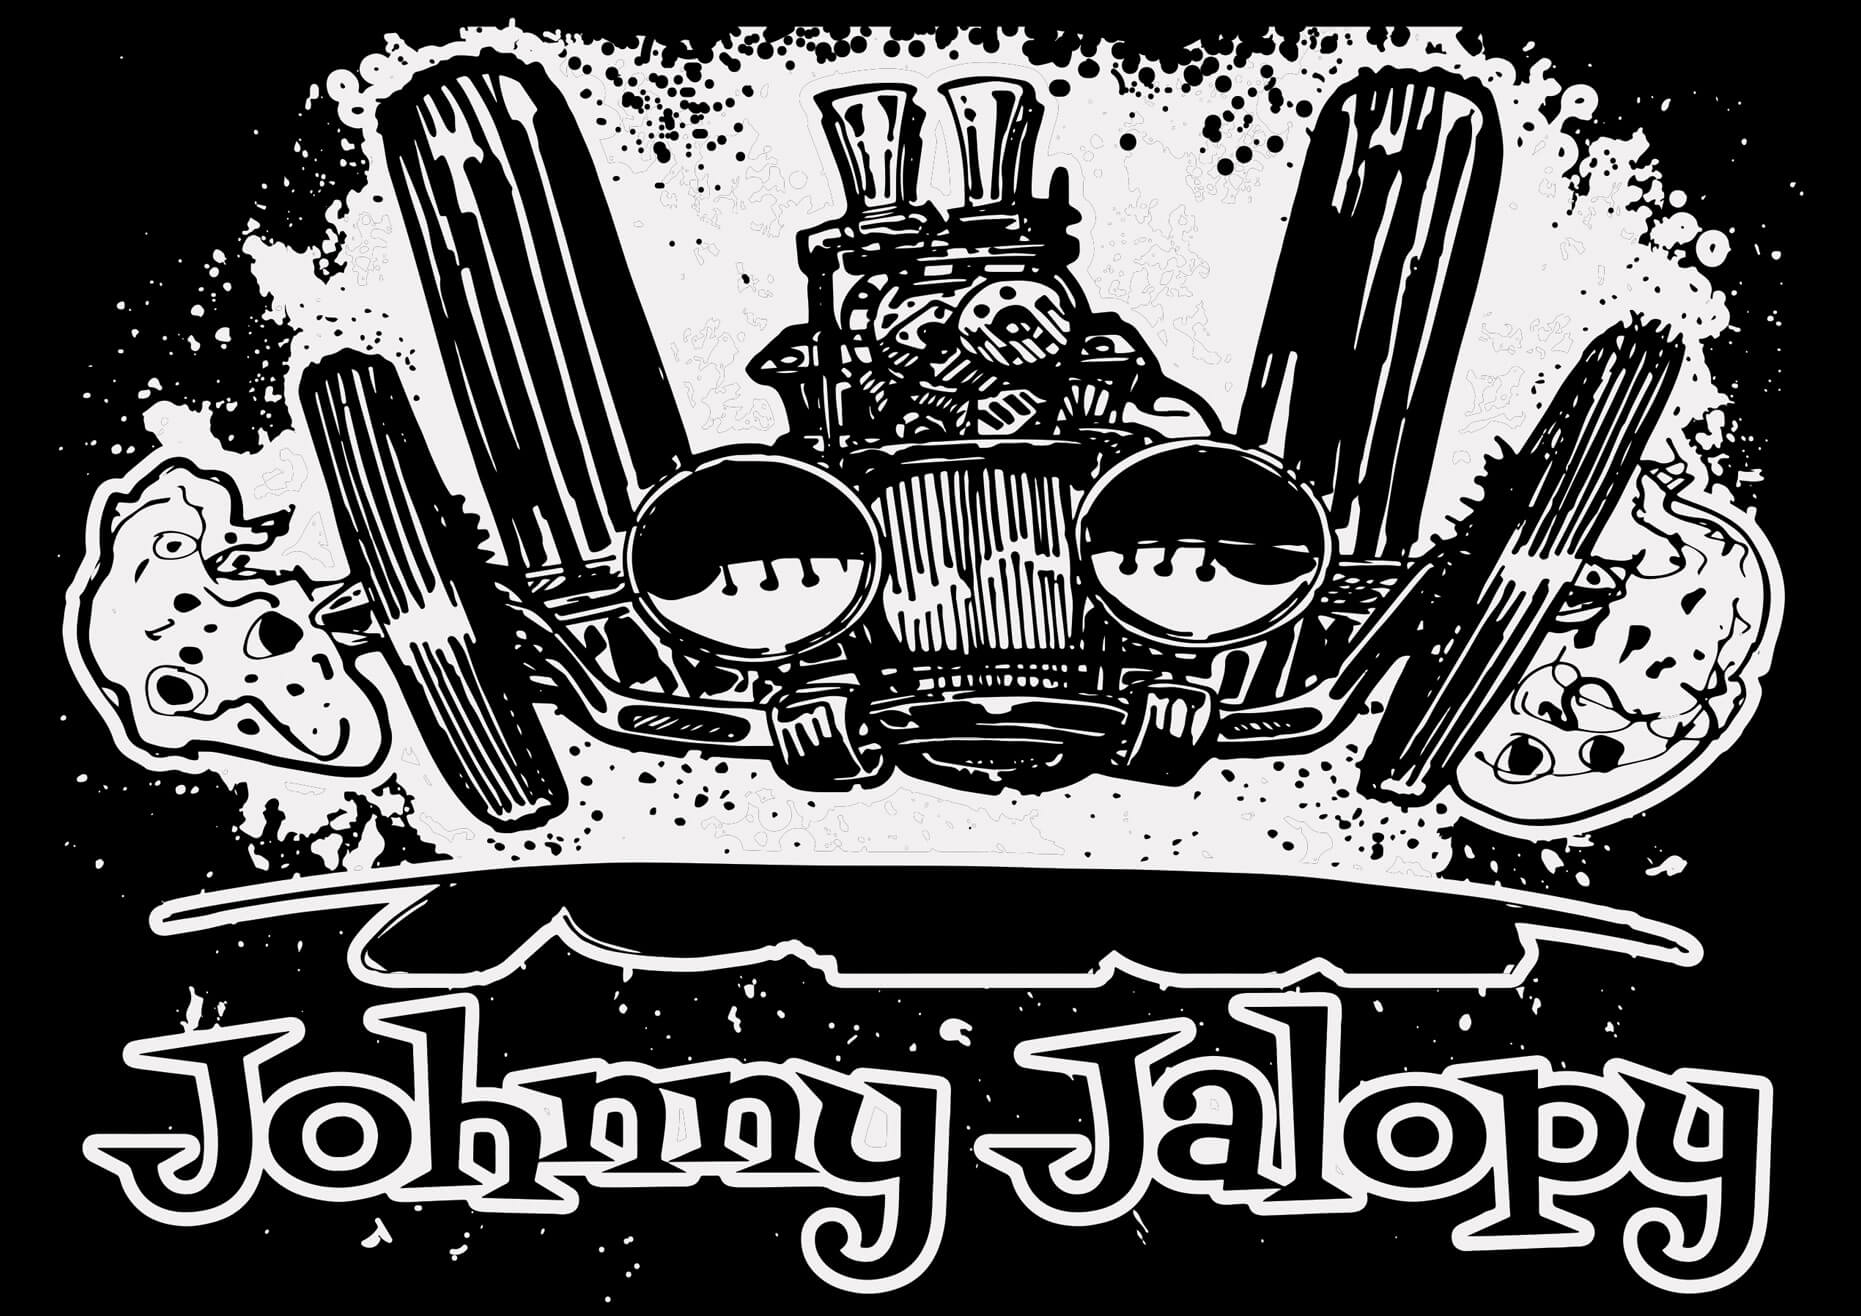 Johnny Jalopy Flyin